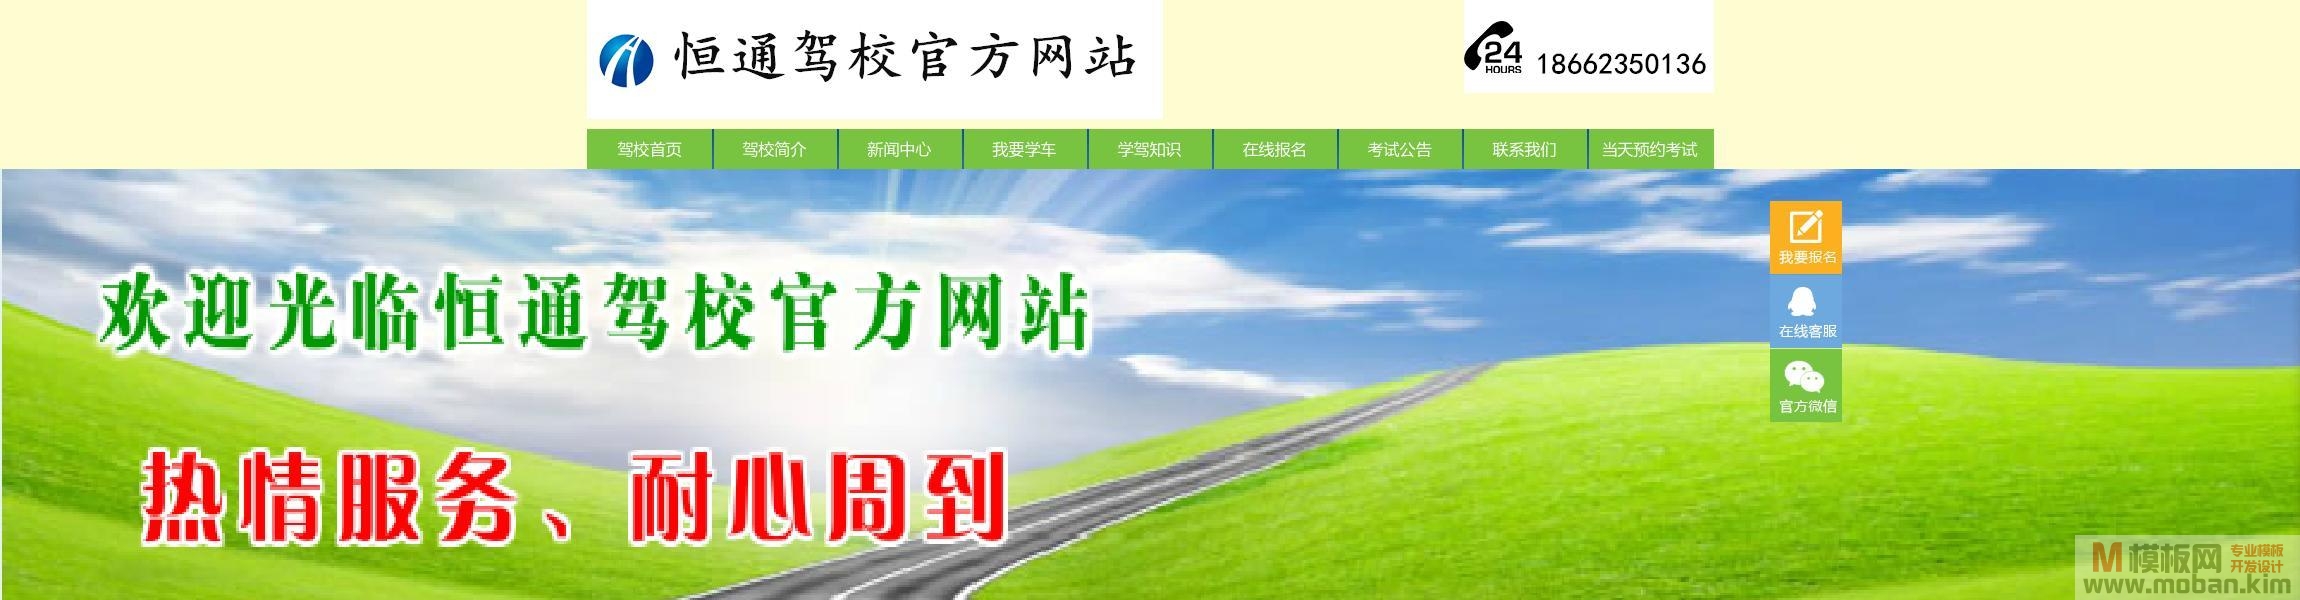 上海恒通驾校官方网站